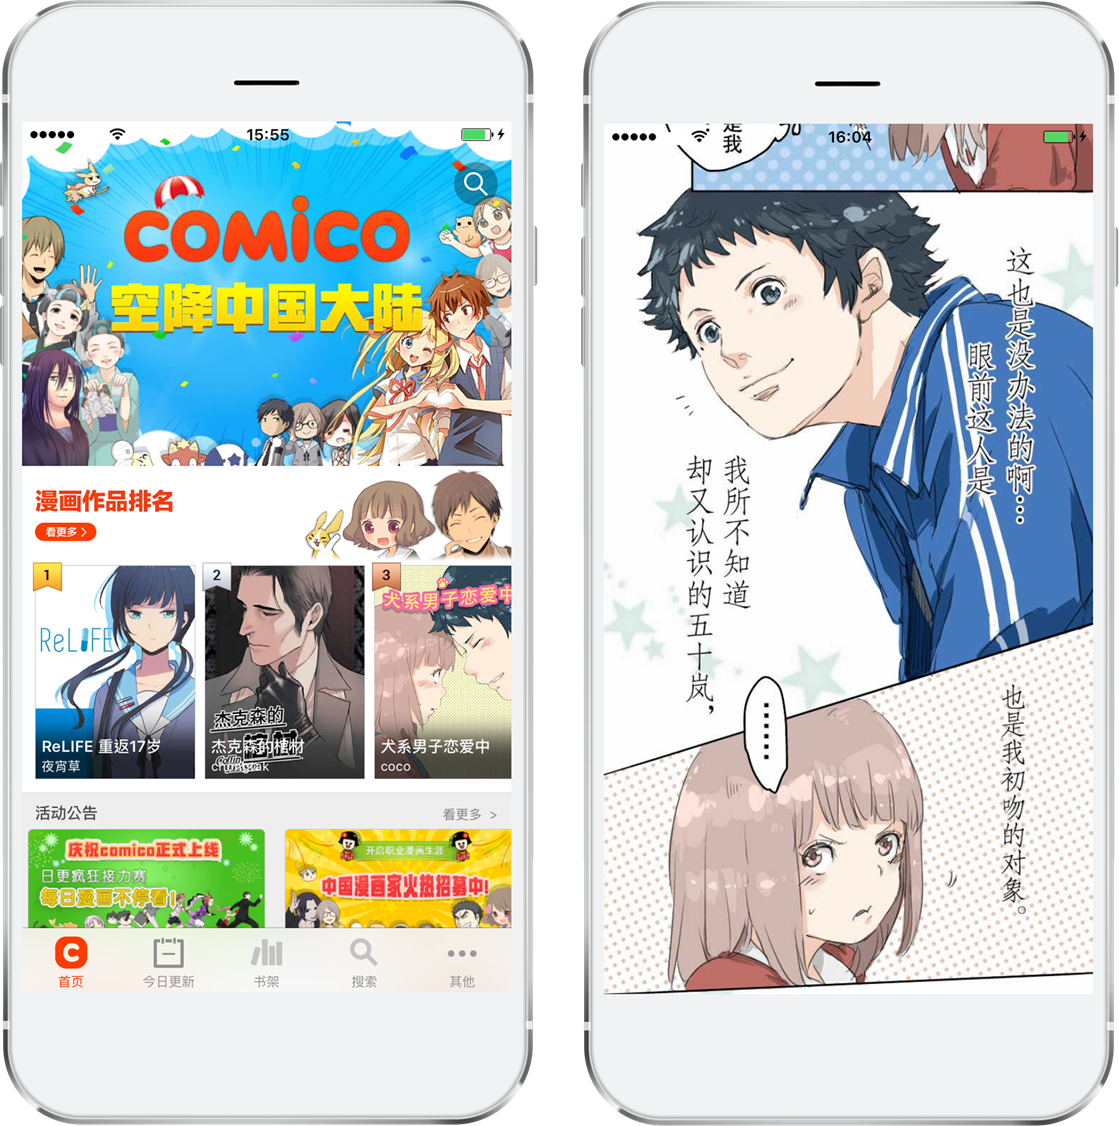 台湾漫画平台comico面向大陆展开服务